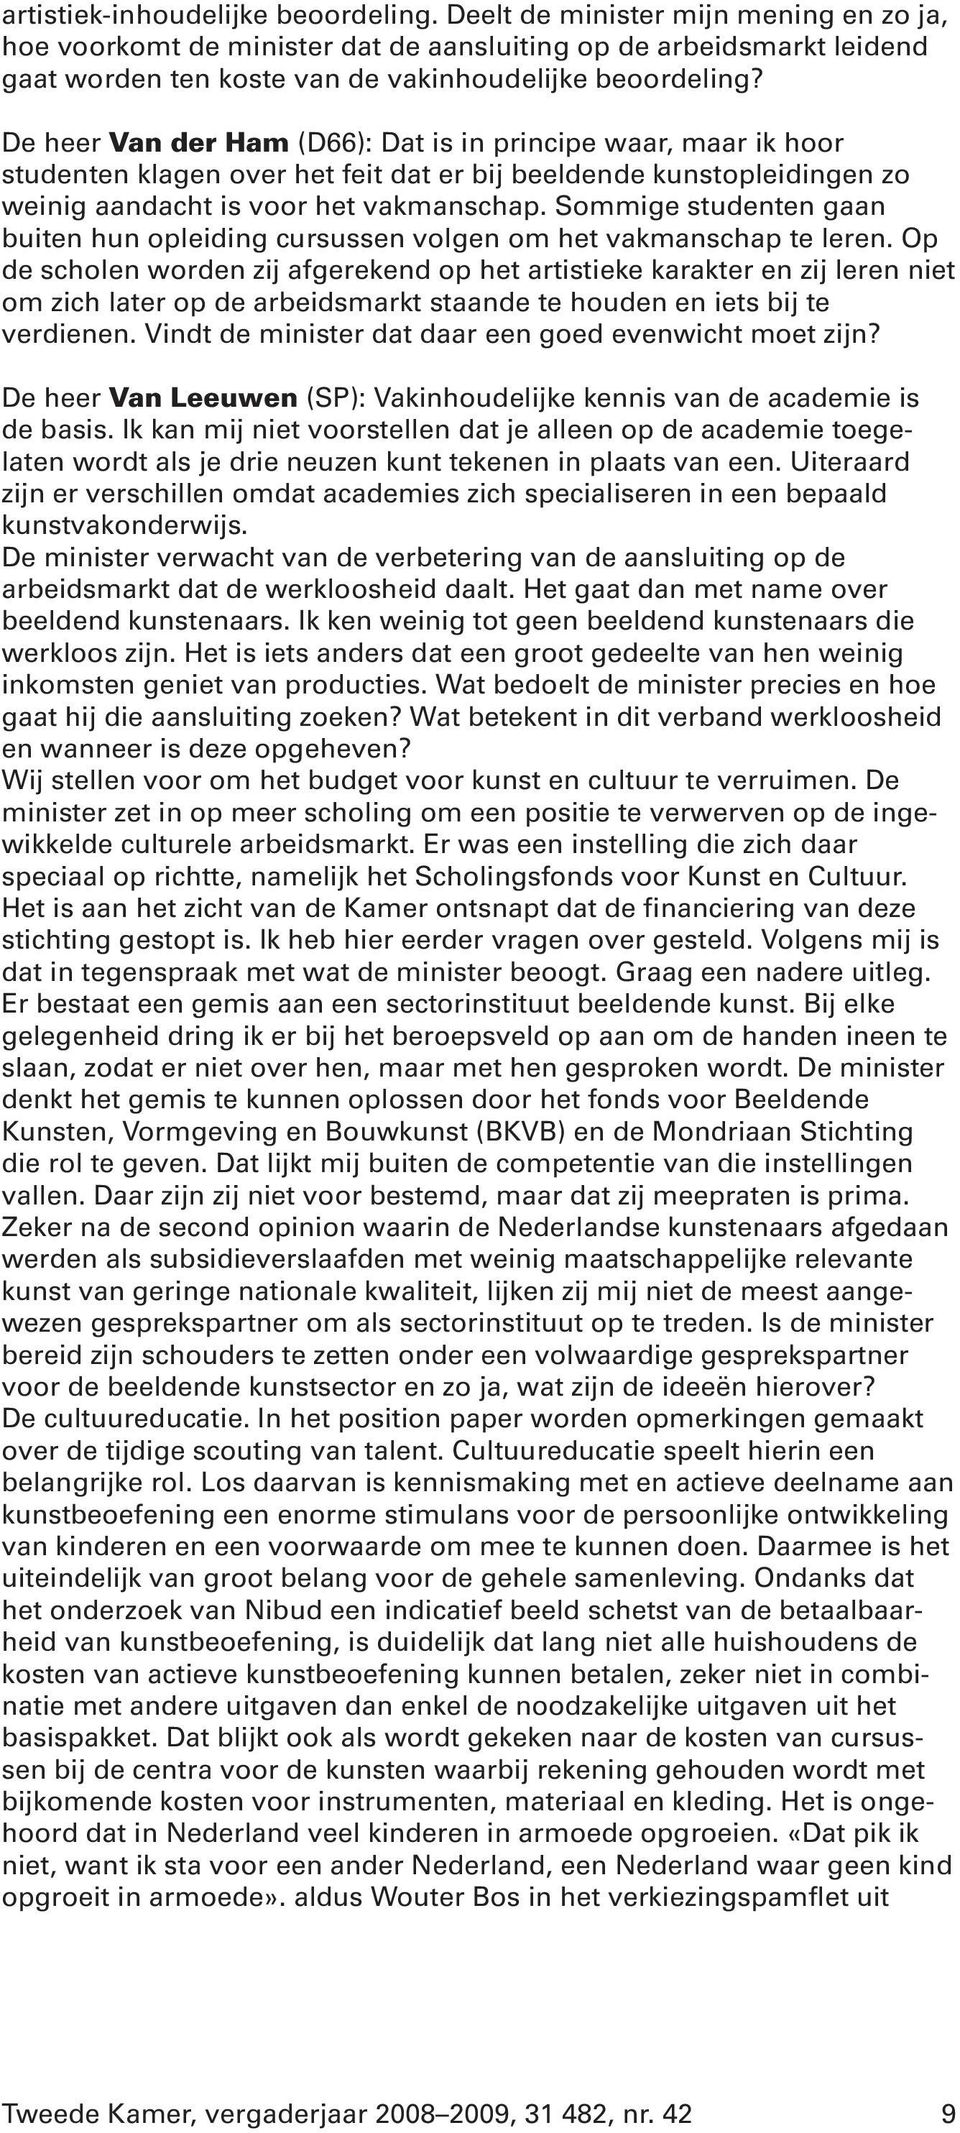 De heer Van der Ham (D66): Dat is in principe waar, maar ik hoor studenten klagen over het feit dat er bij beeldende kunstopleidingen zo weinig aandacht is voor het vakmanschap.